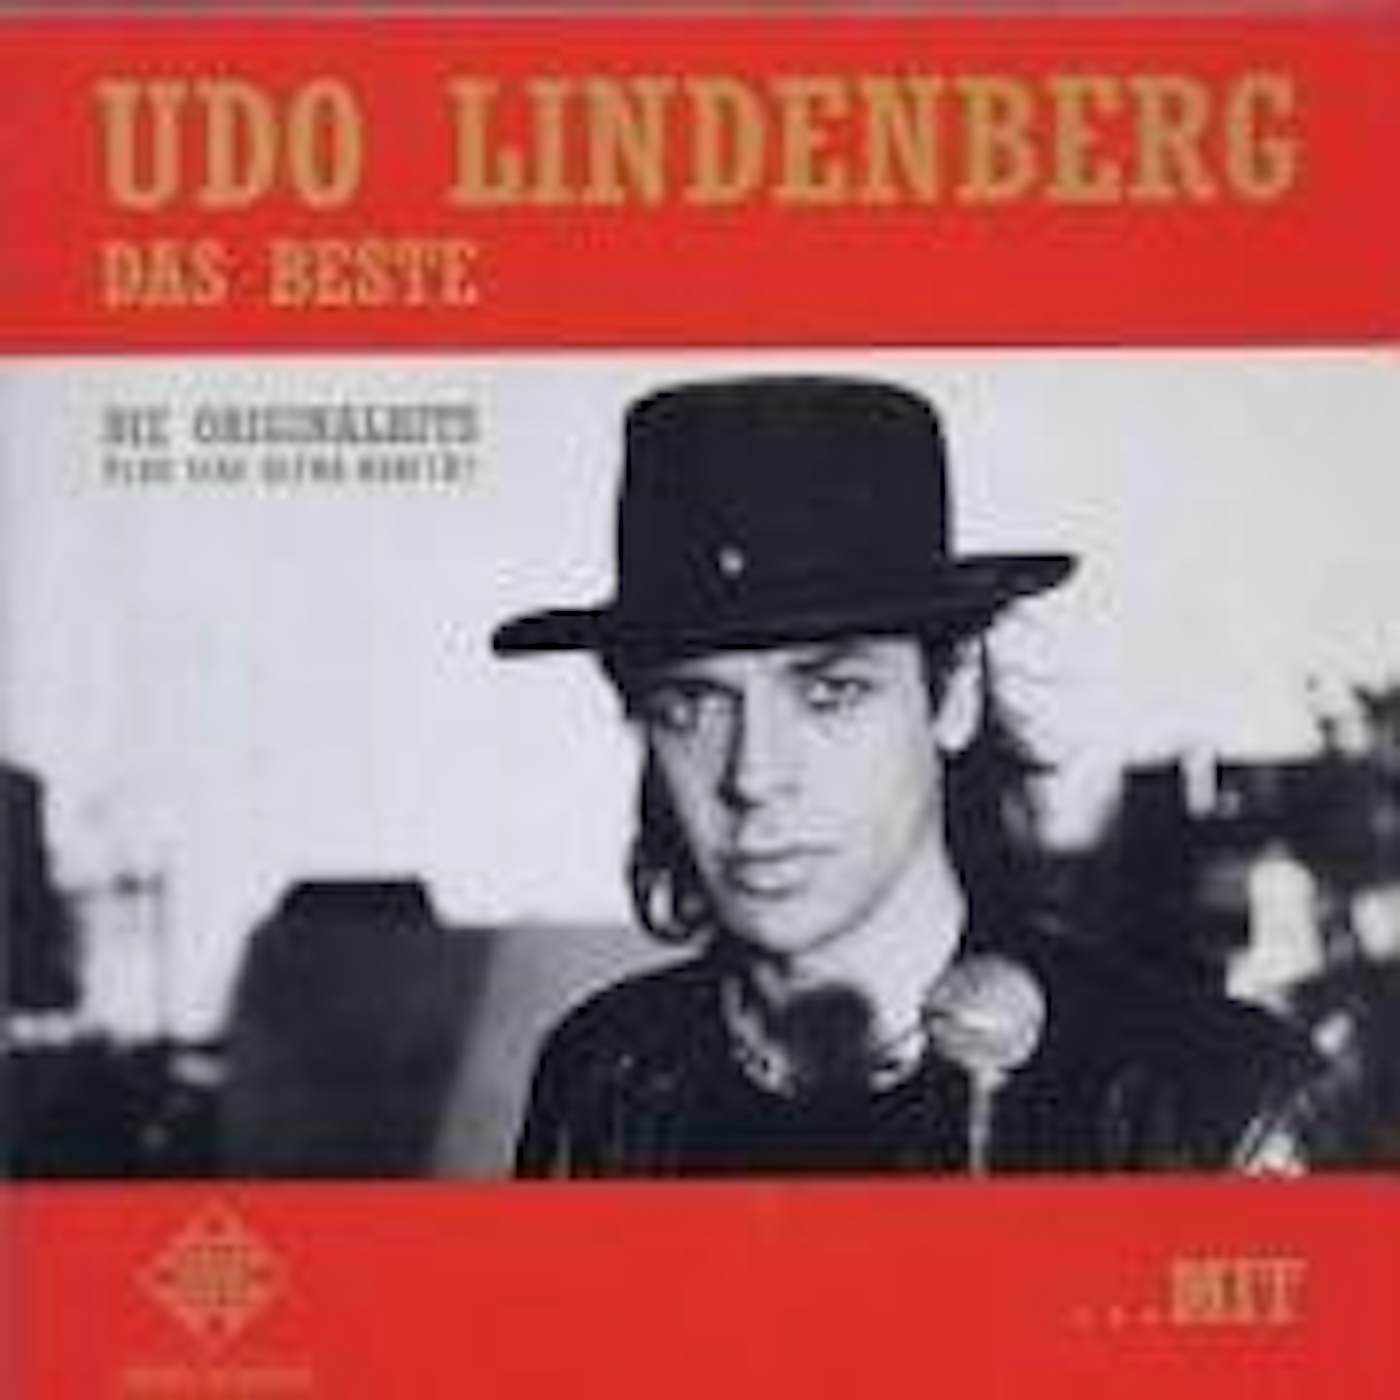 Udo Lindenberg DAS BESTE MIT UND OHNE HUT CD